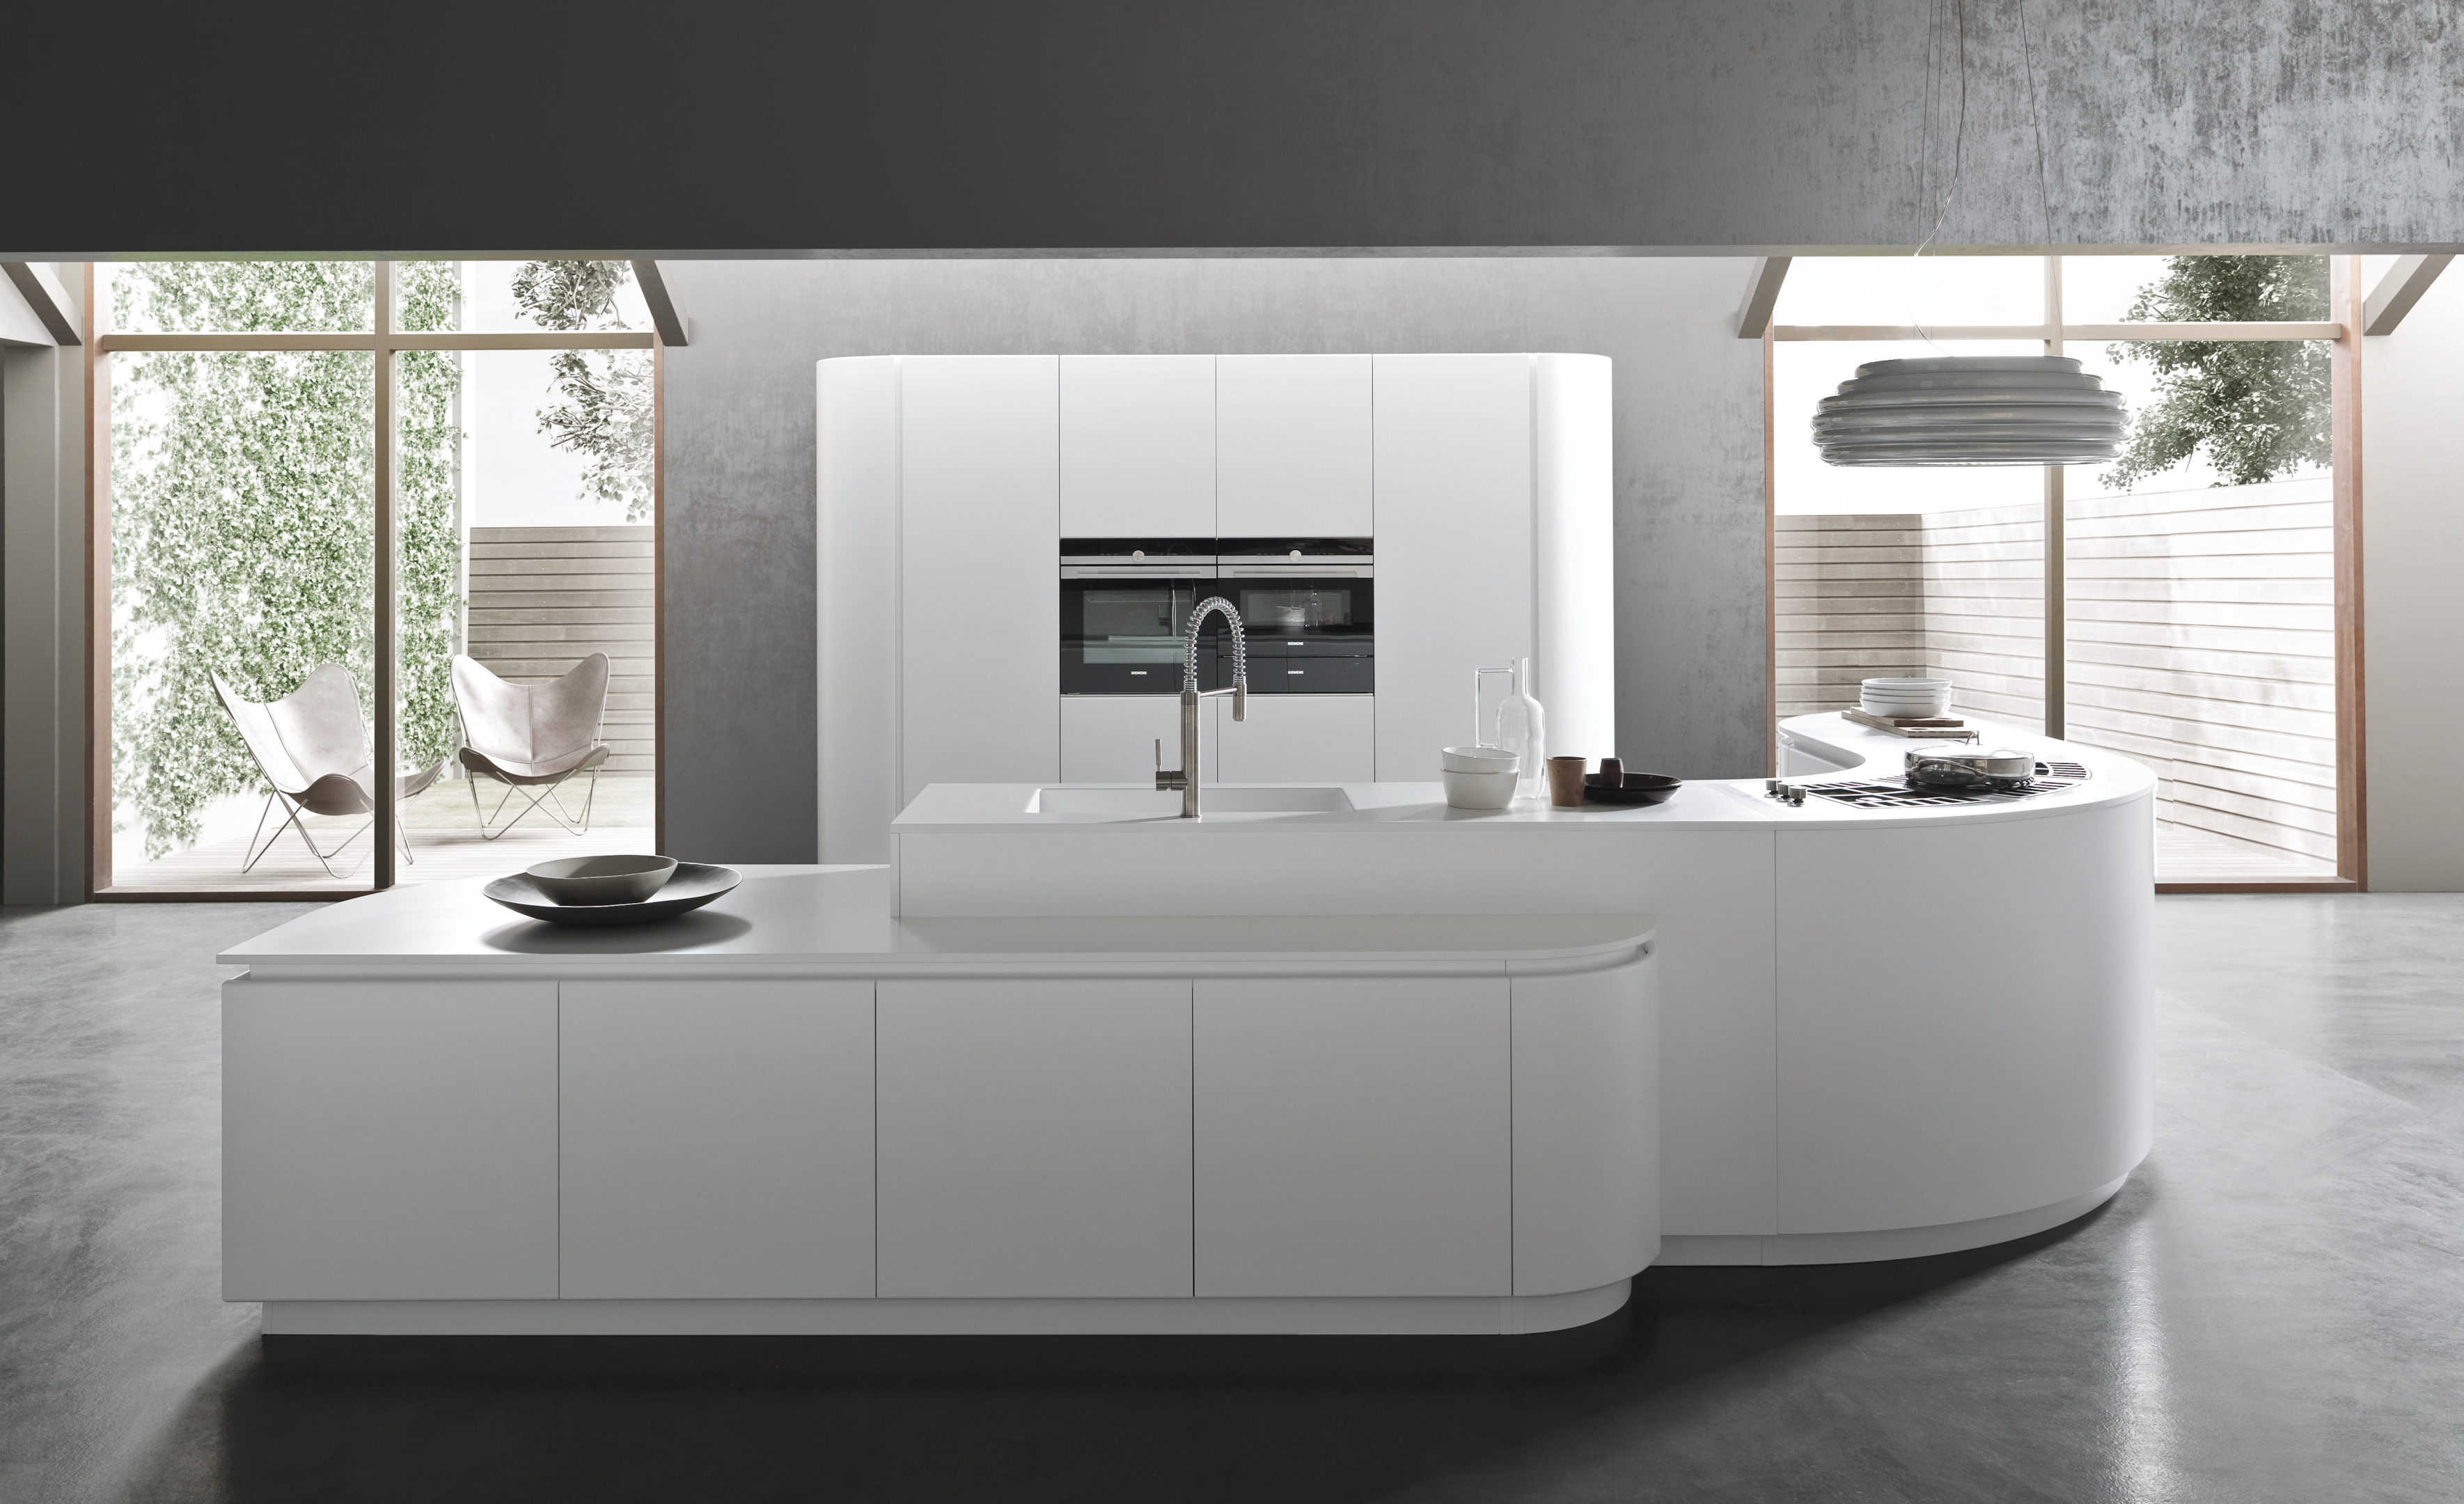 Customized modern kitchen with unique design - Pedini Miami